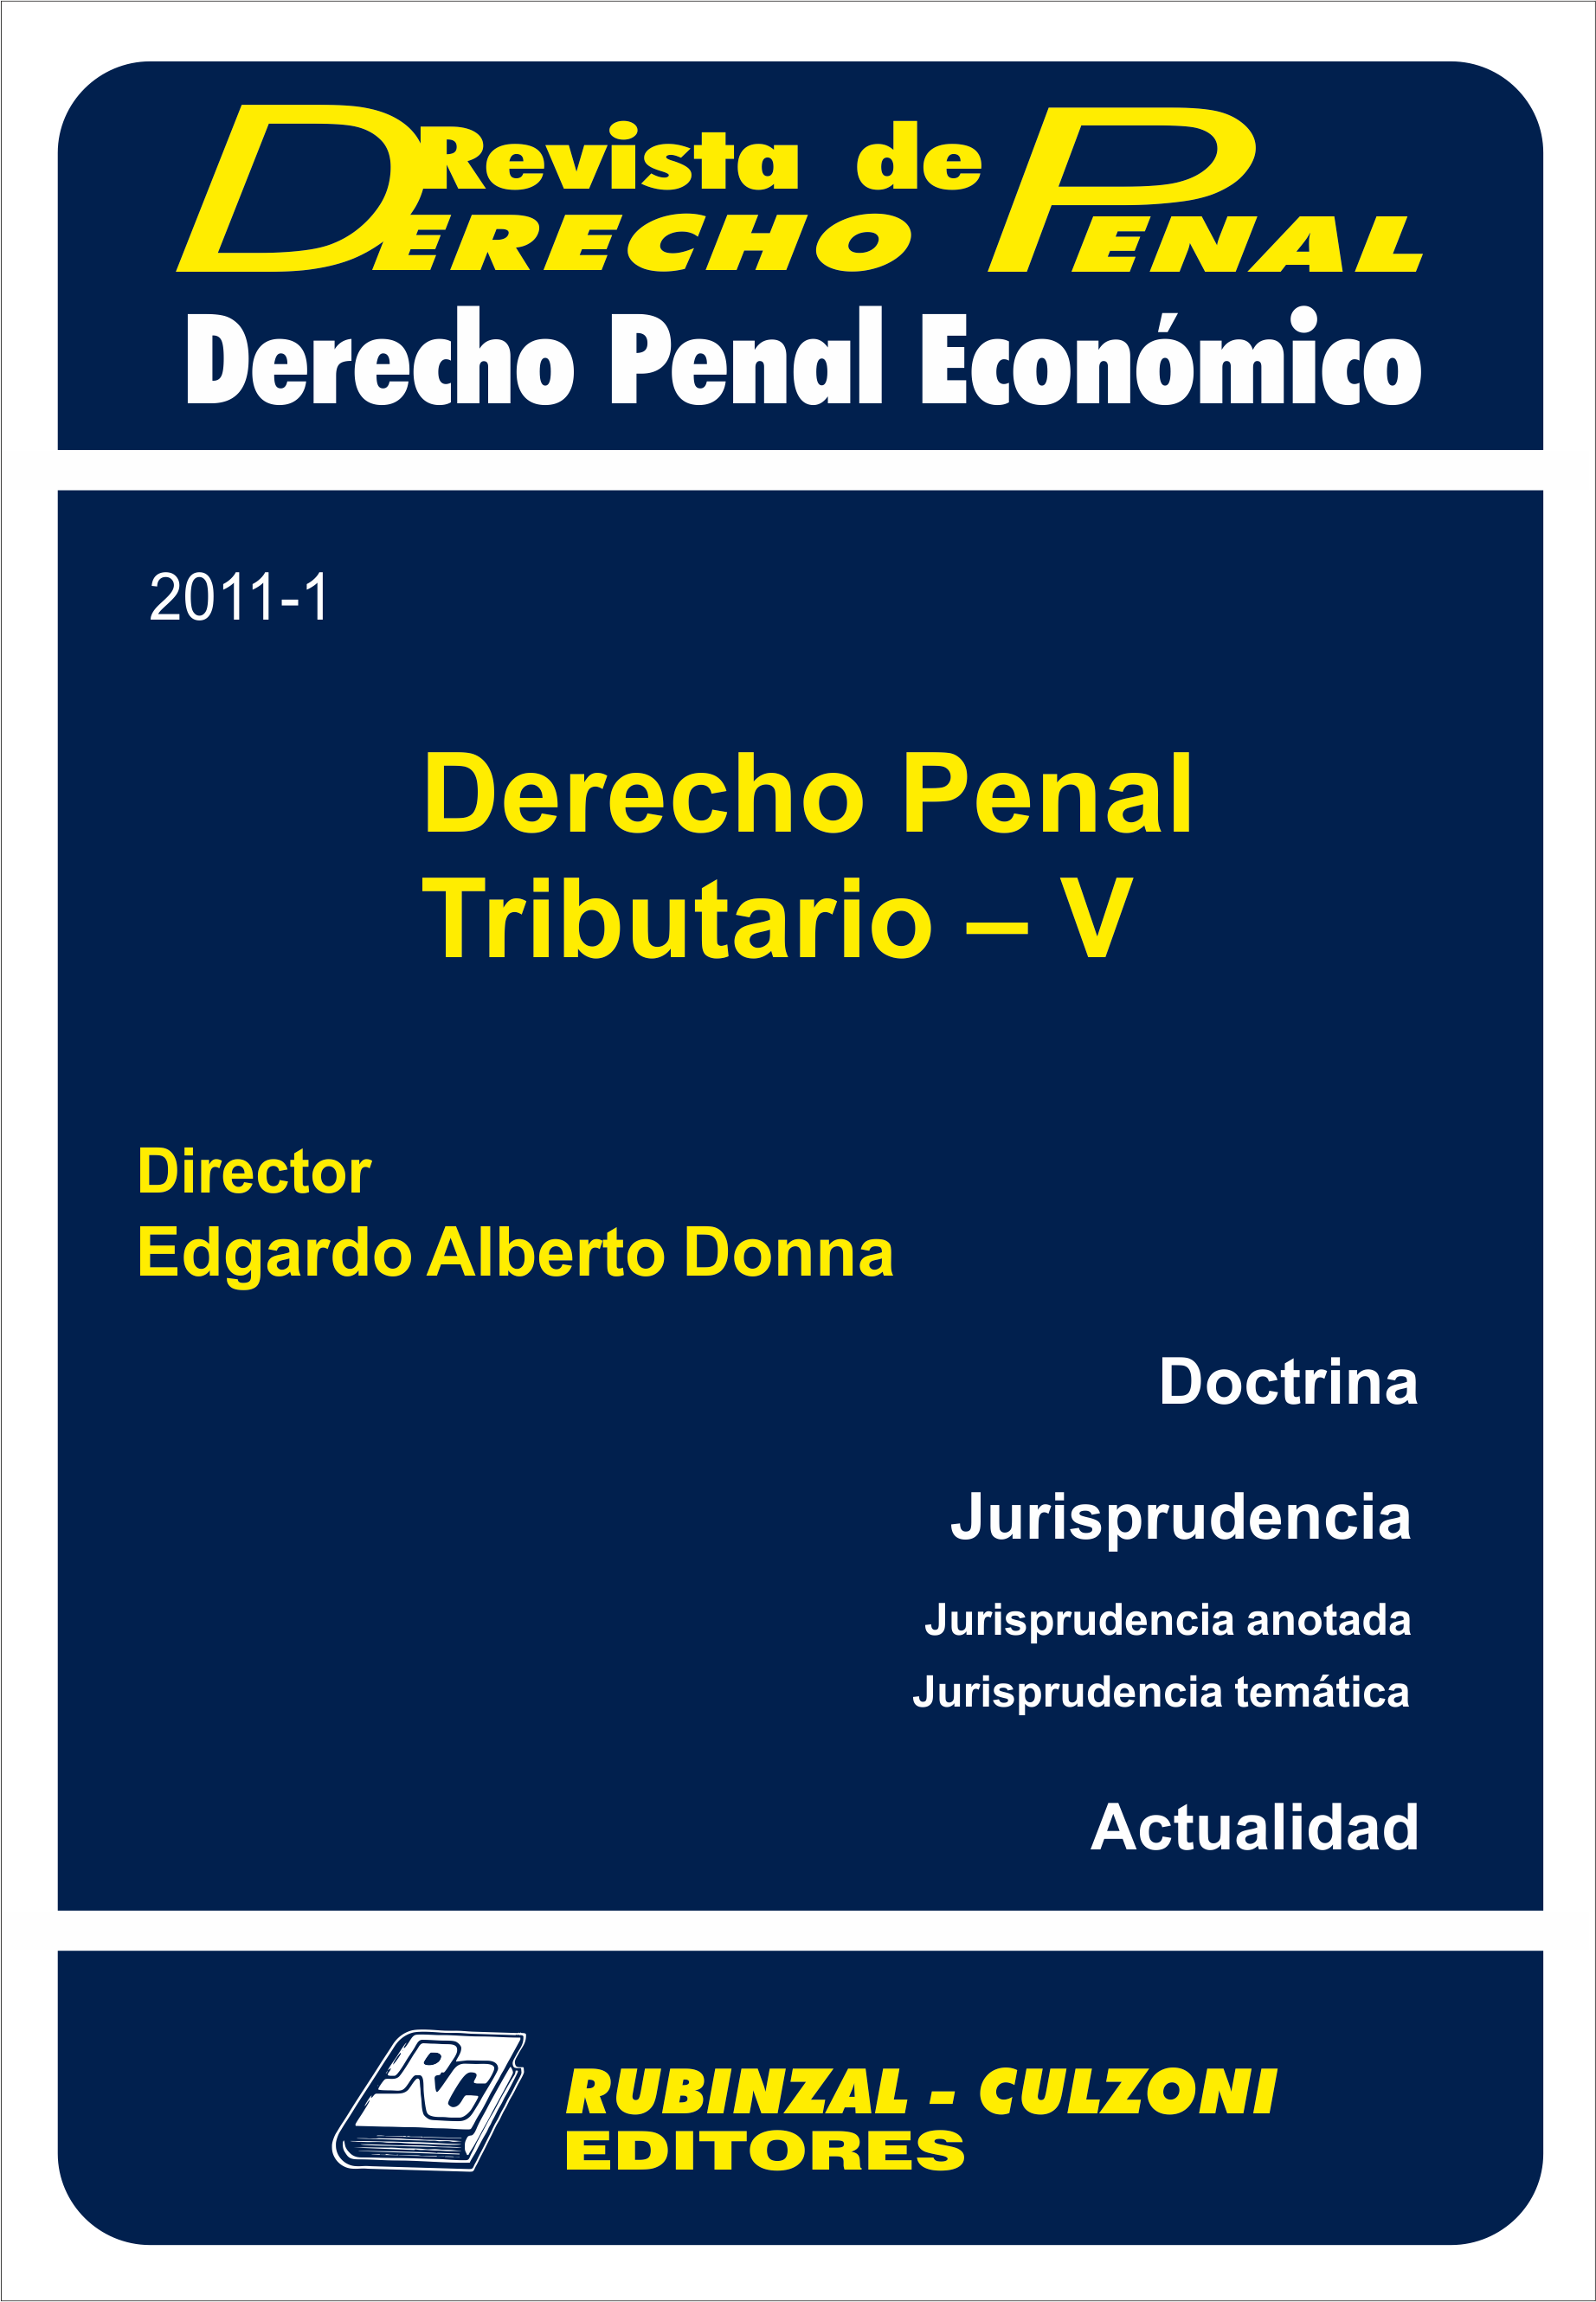 Revista de Derecho Penal Económico - Derecho Penal Tributario - V.